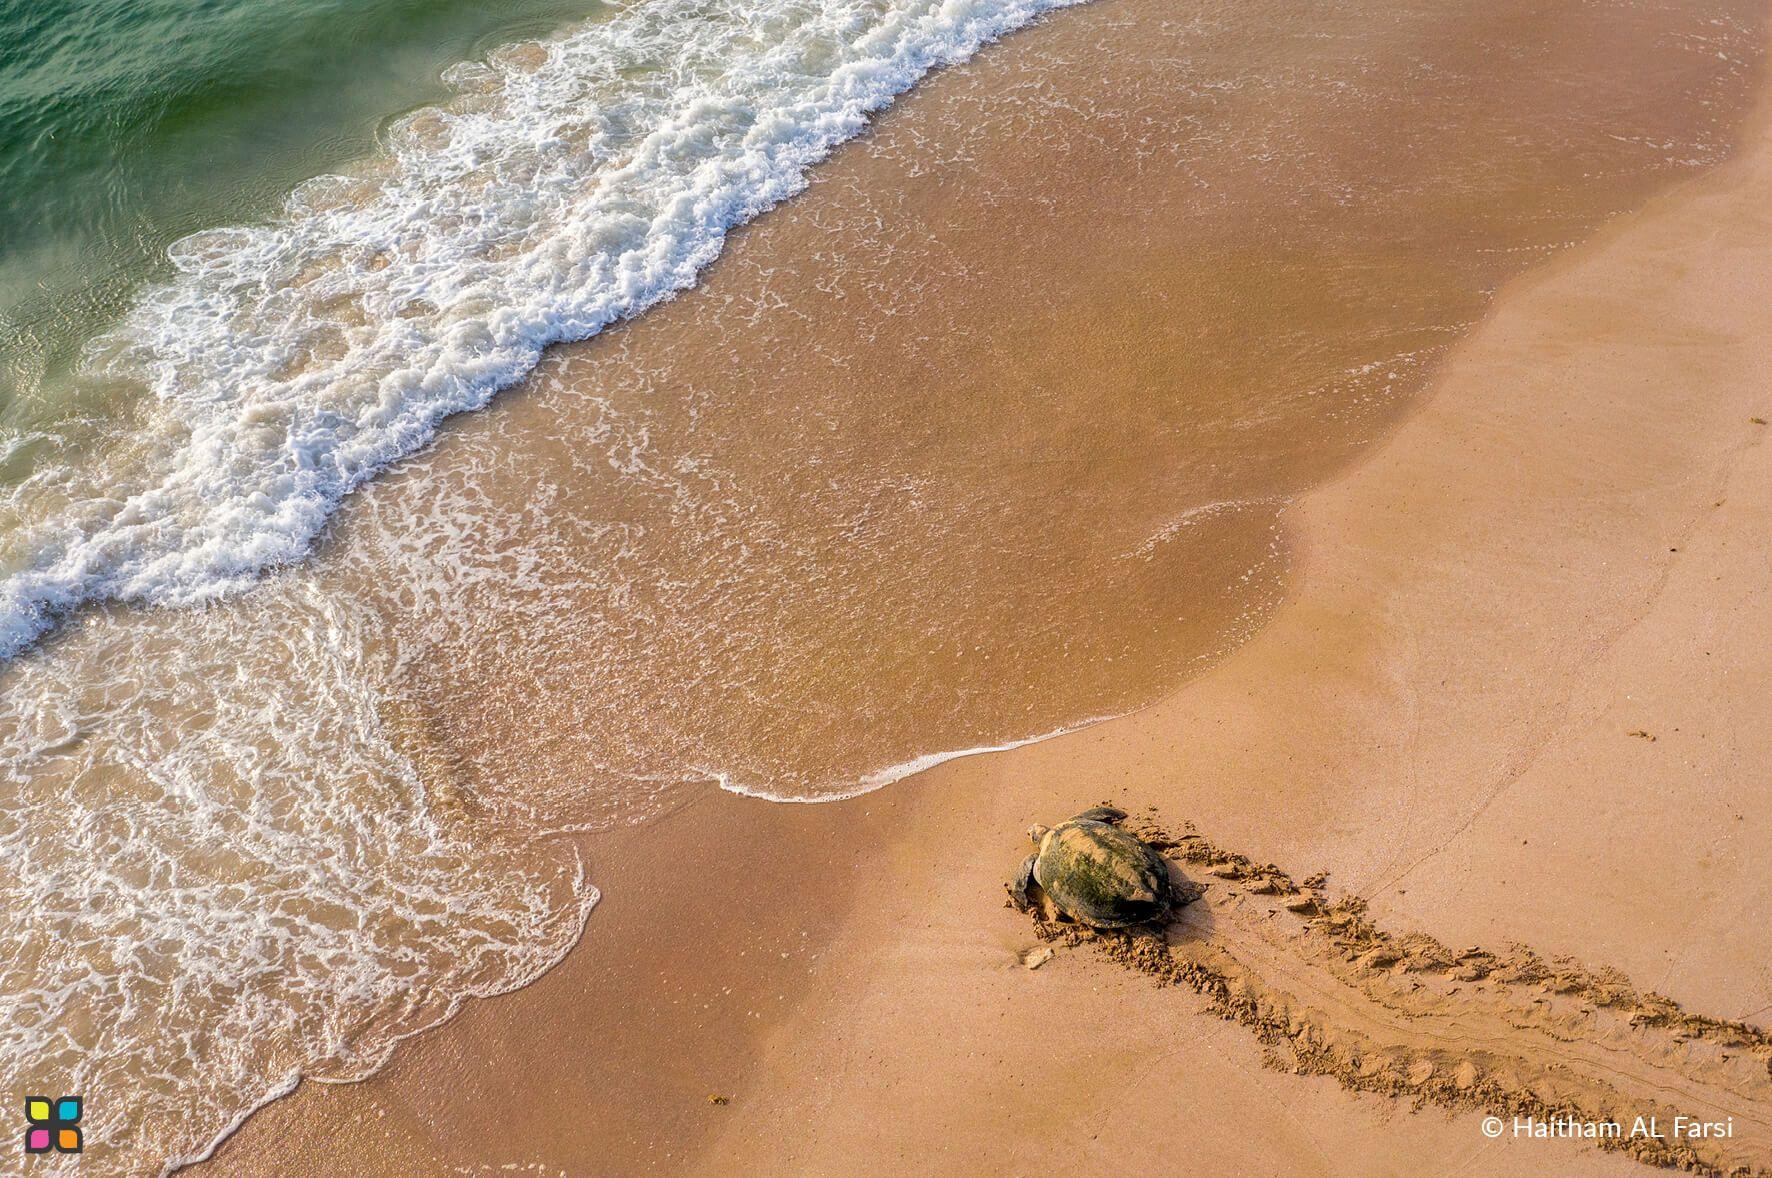 -سلحفاة بحرية تشق طريقها عبر الرمال لتقتحم الأمواج
المصور: هيثم الفارسي
المكان: رأس الحد، عمان